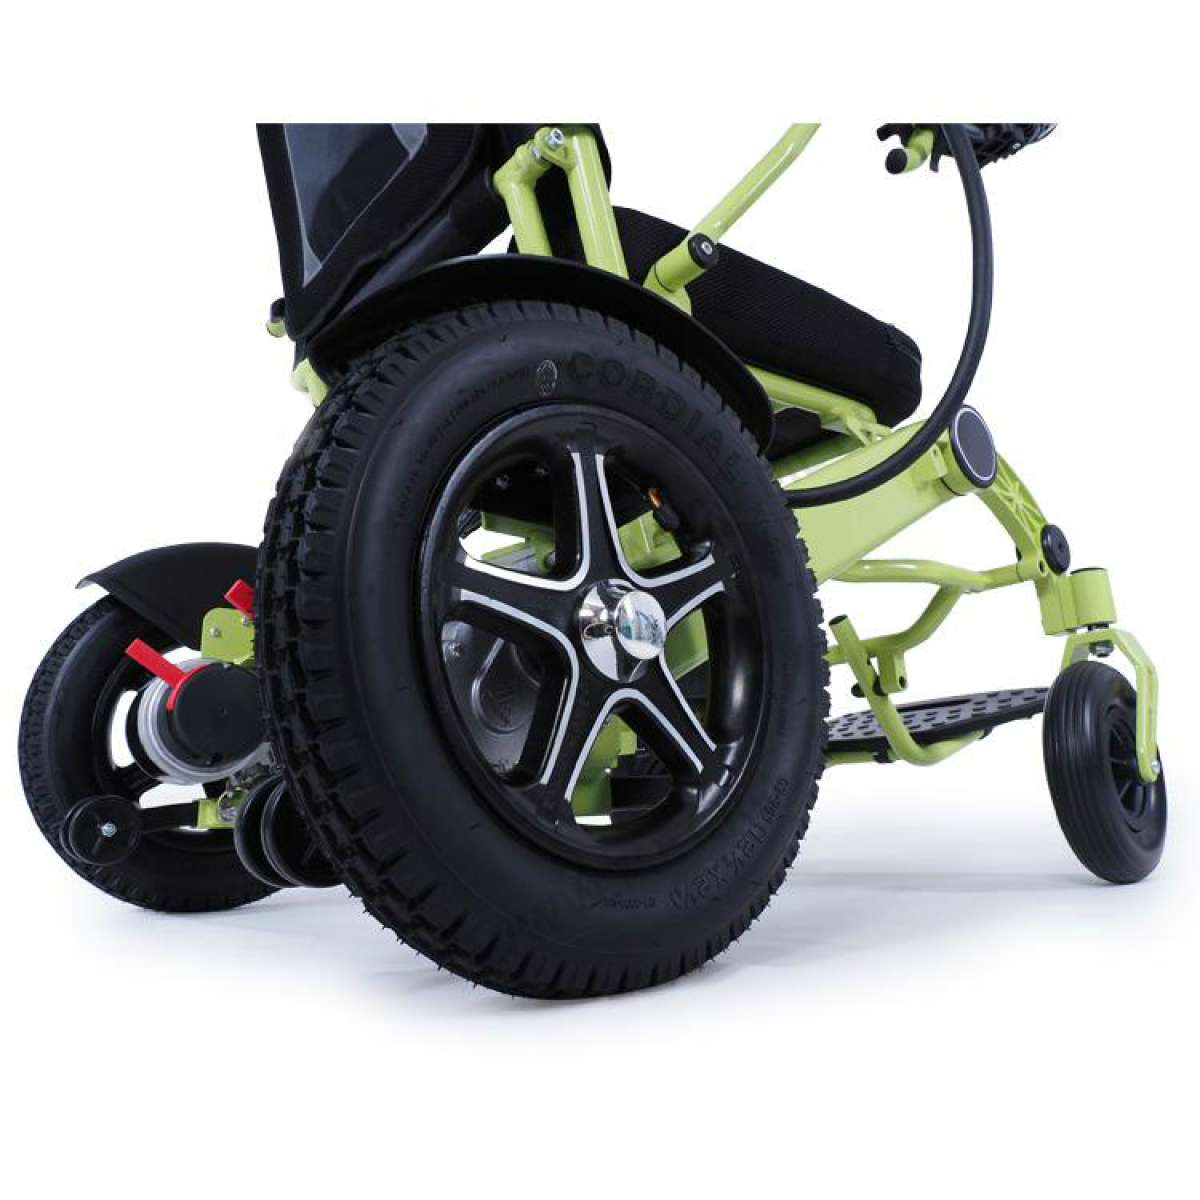 Мощное малогабаритное кресло-коляска с электроприводом MET Compact 35